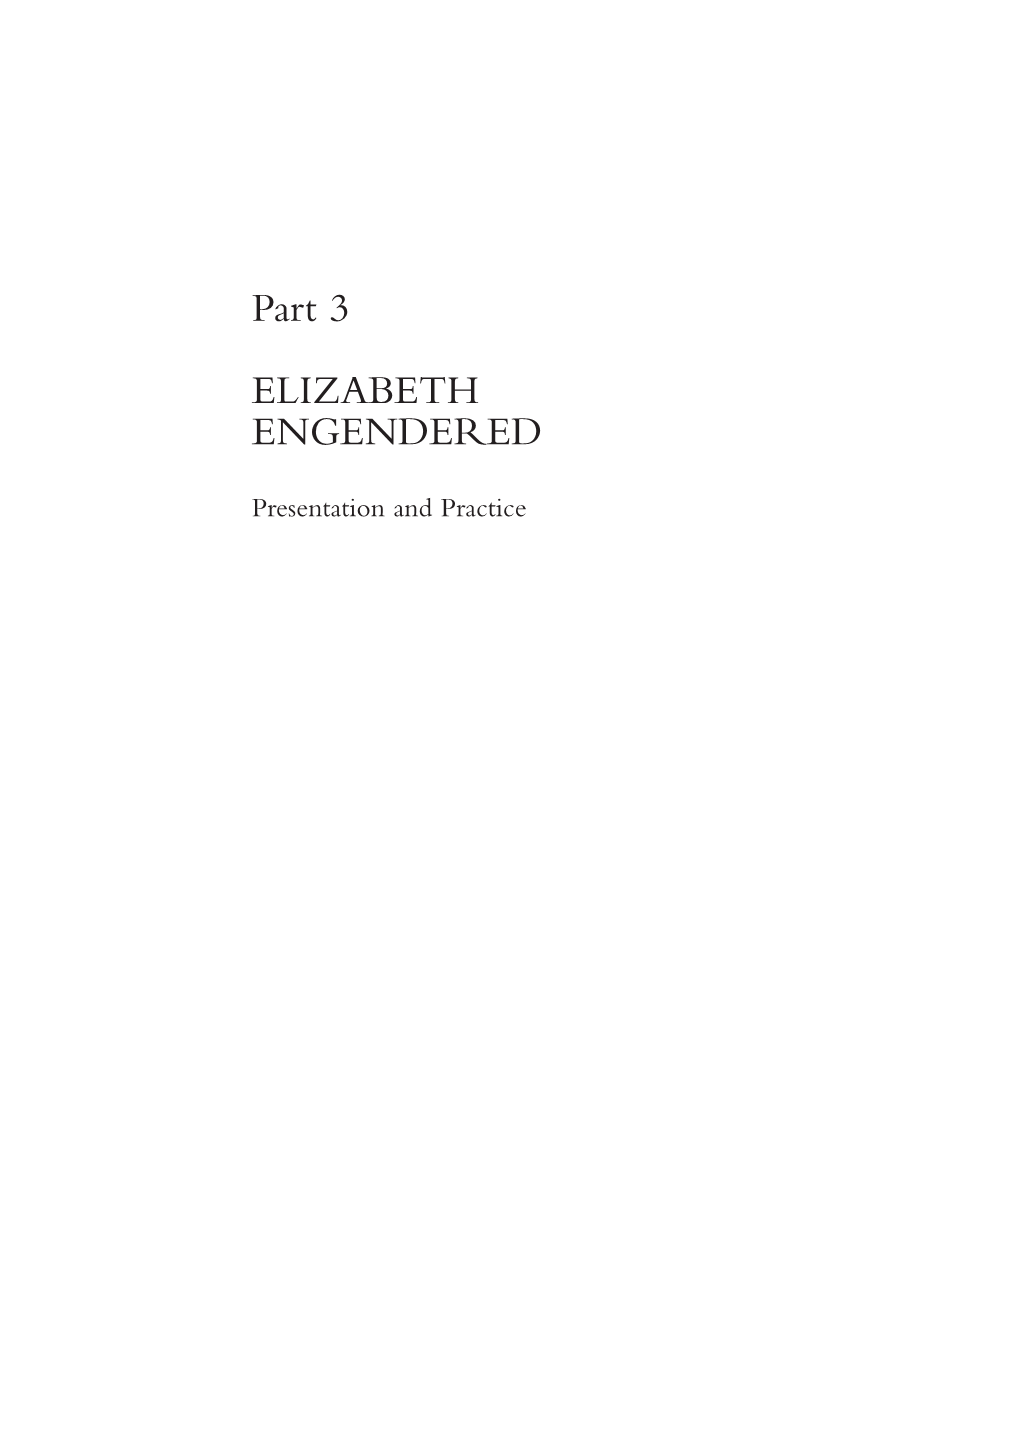 Part 3 ELIZABETH ENGENDERED